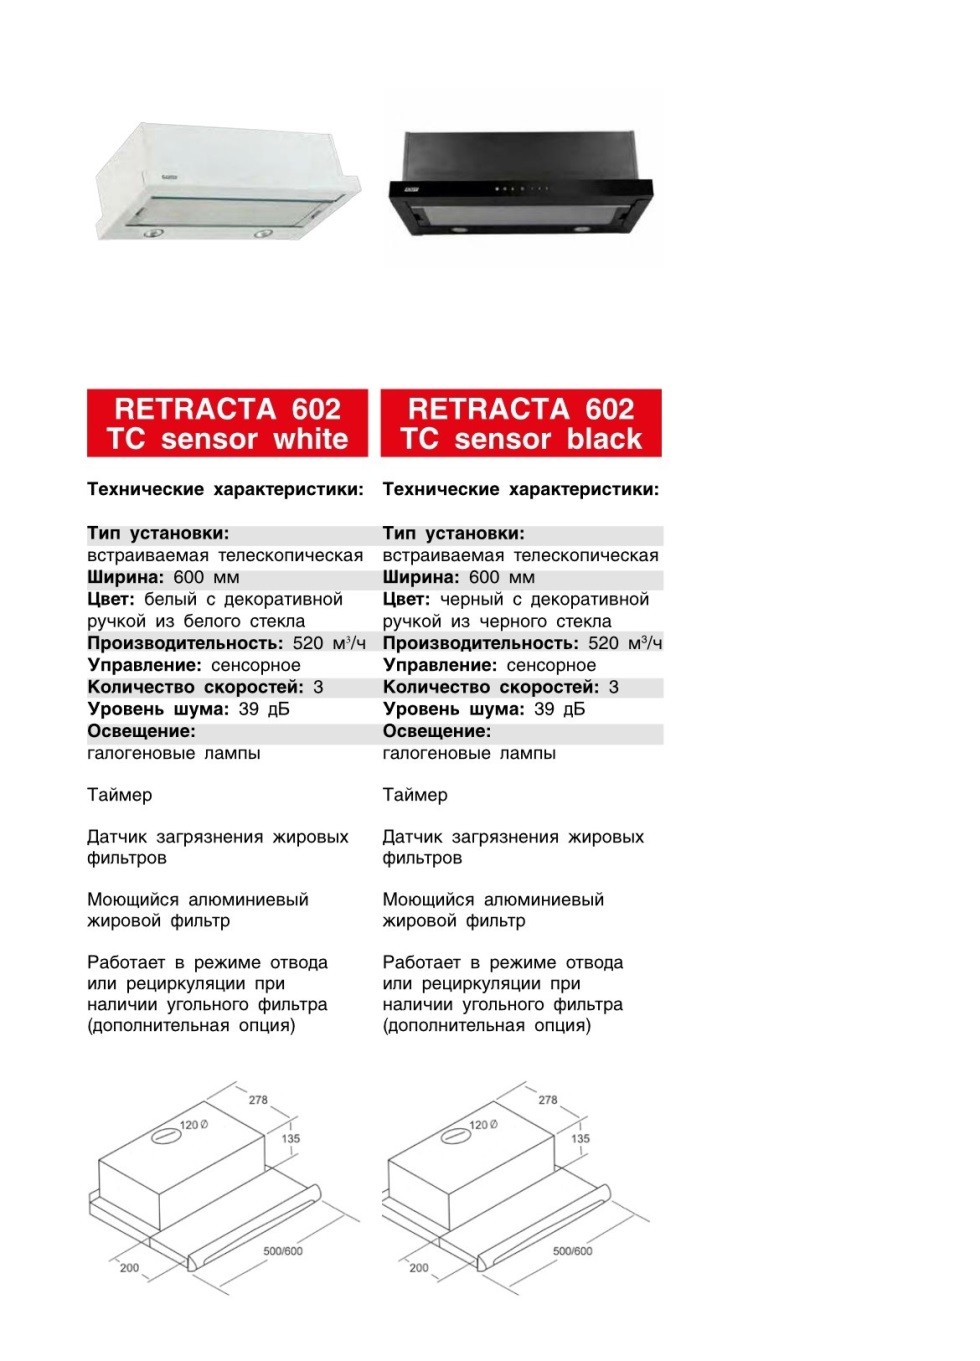 Кухонные телескопические вытяжки RETRACTA 602 в Беларуси недорого. Каталог и цены